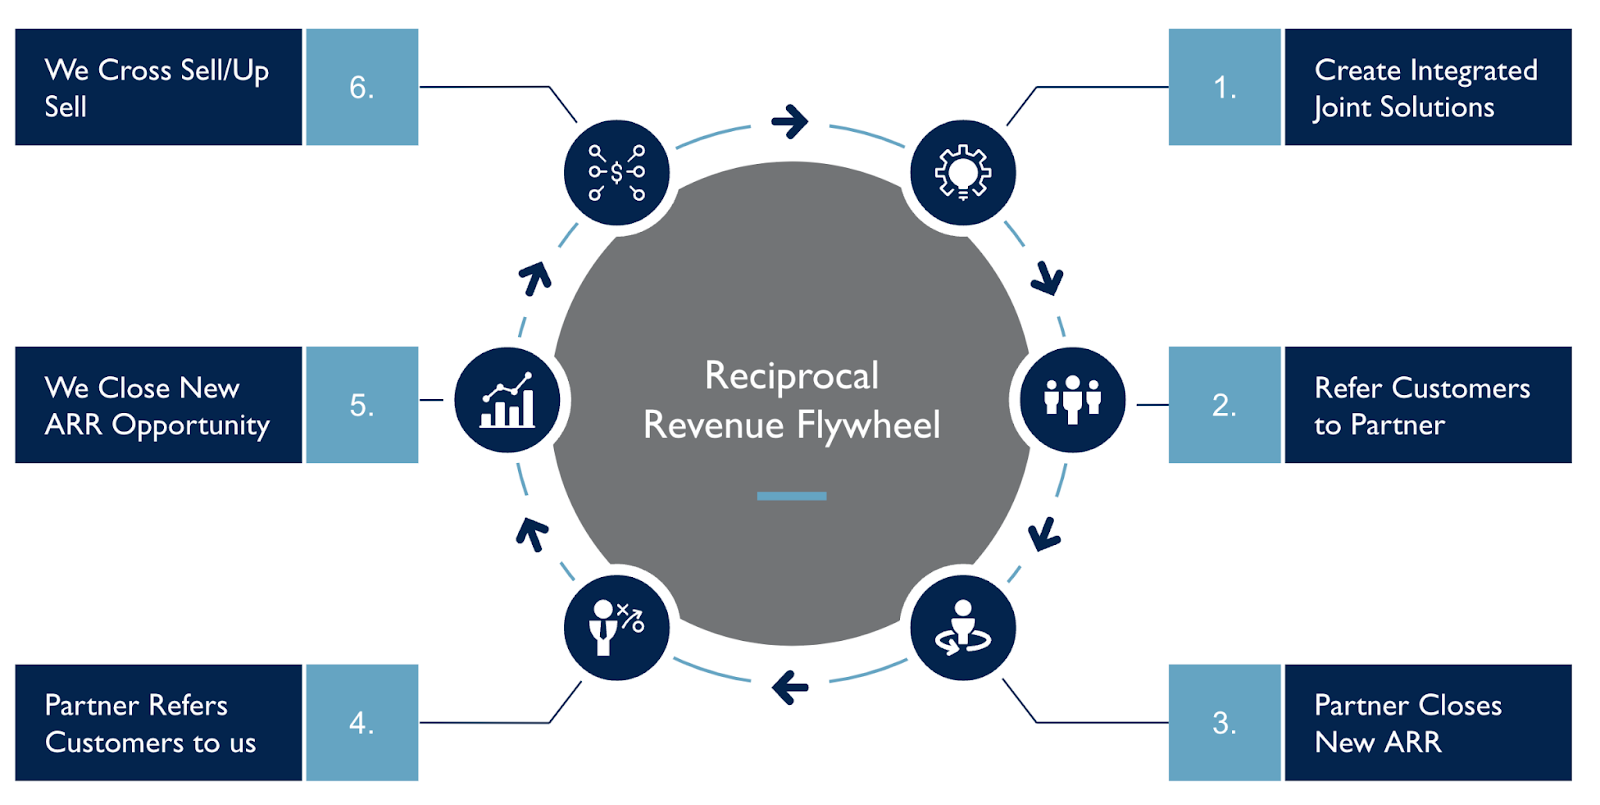 Reciprocal revenue flywheel